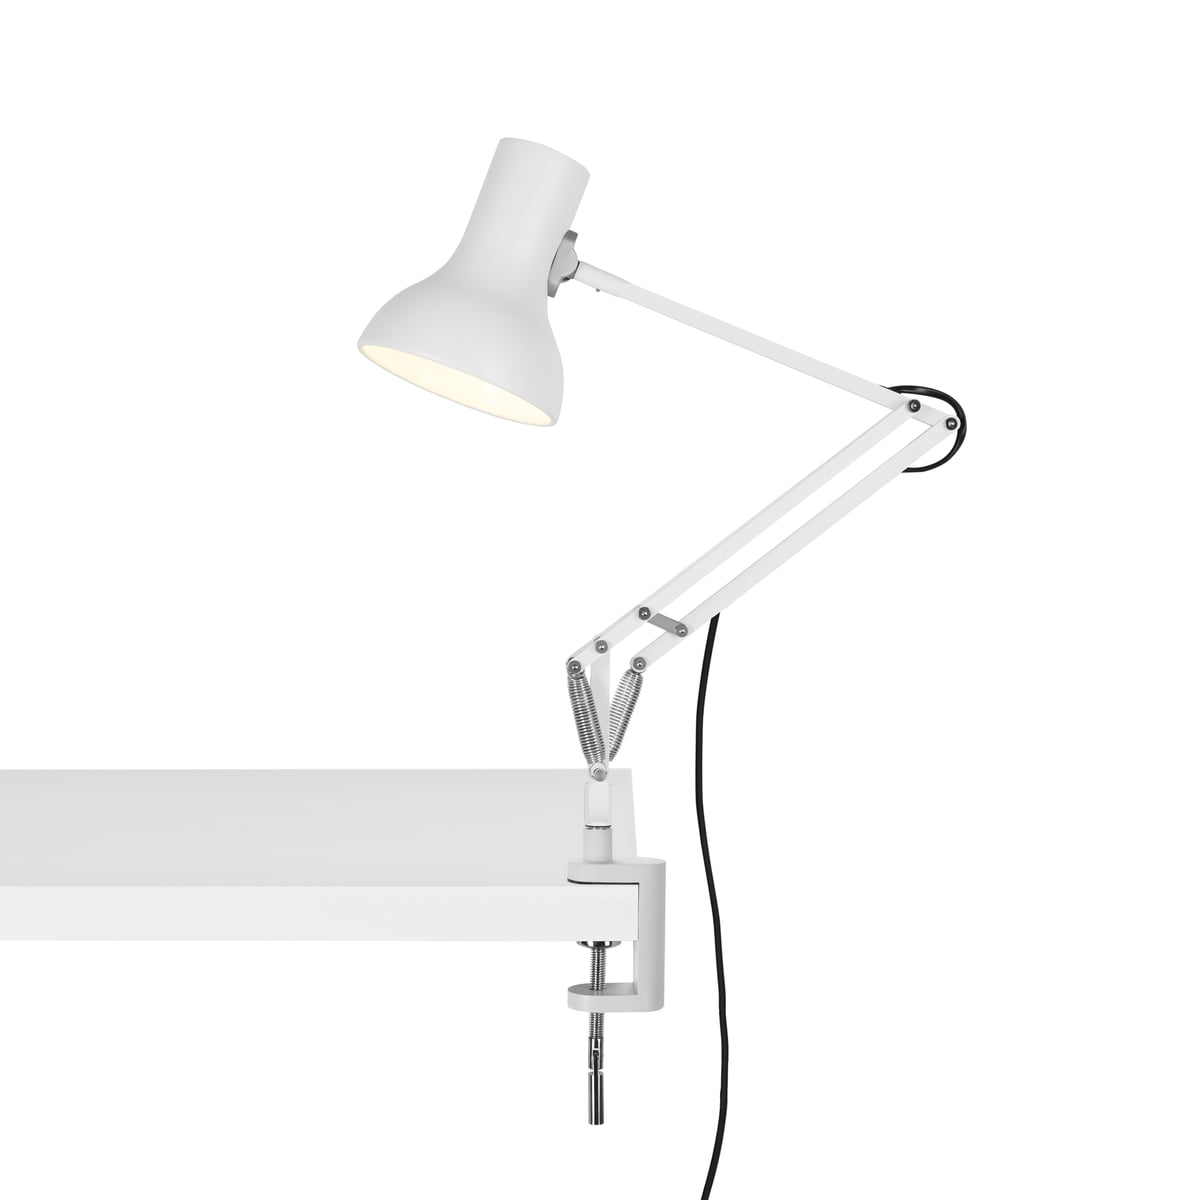 Angle Multi Poised Desk Lamp In Black Fully Adjustable Light Clips Onto Desk 